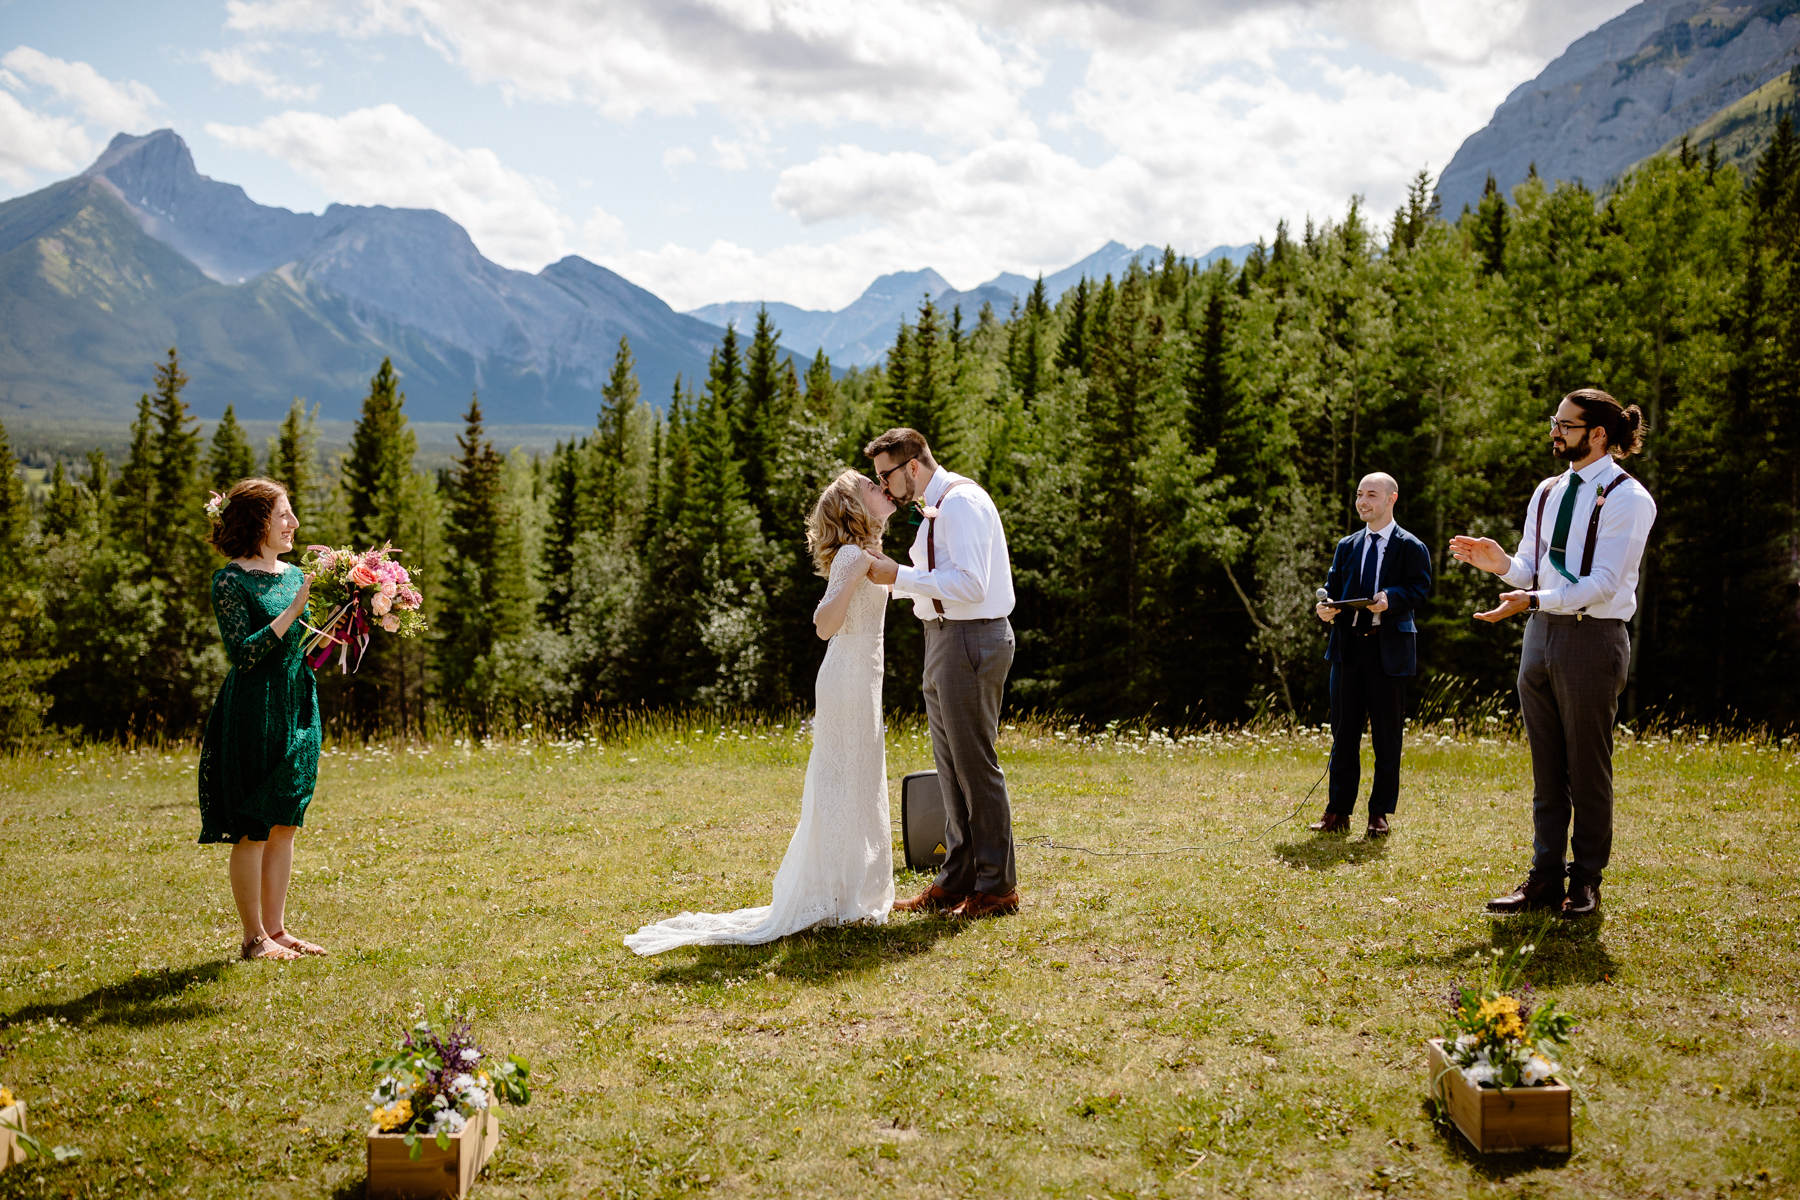 Kananaskis Wedding Photography at Pomeroy Mountain Lodge - Image  32